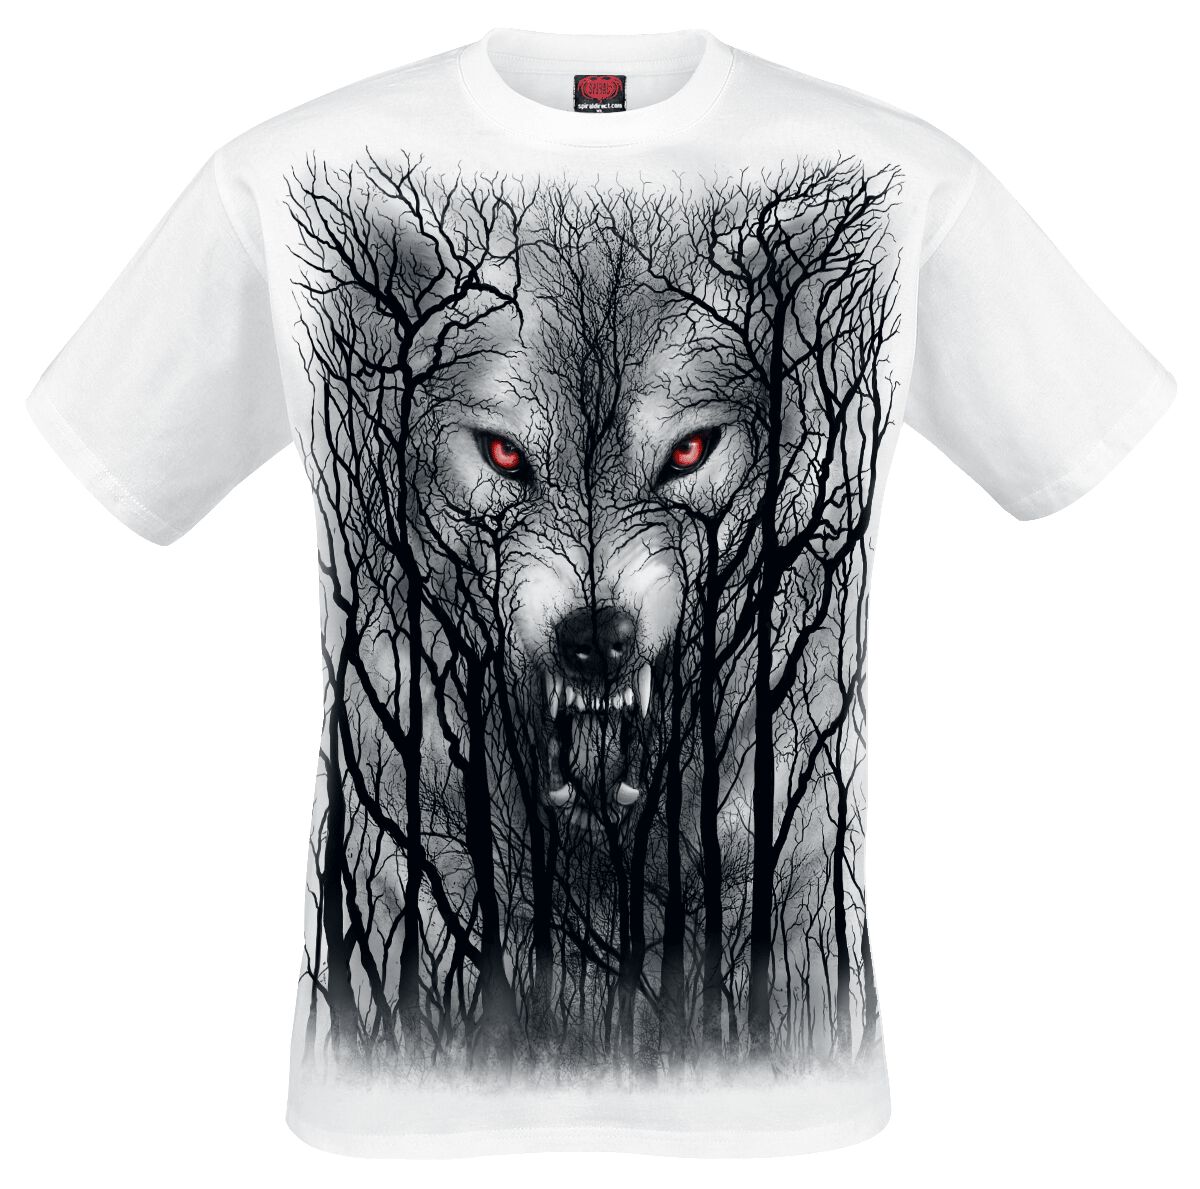 T-Shirt Manches courtes Gothic de Spiral - Forest Wolf - S à XXL - pour Homme - blanc/noir